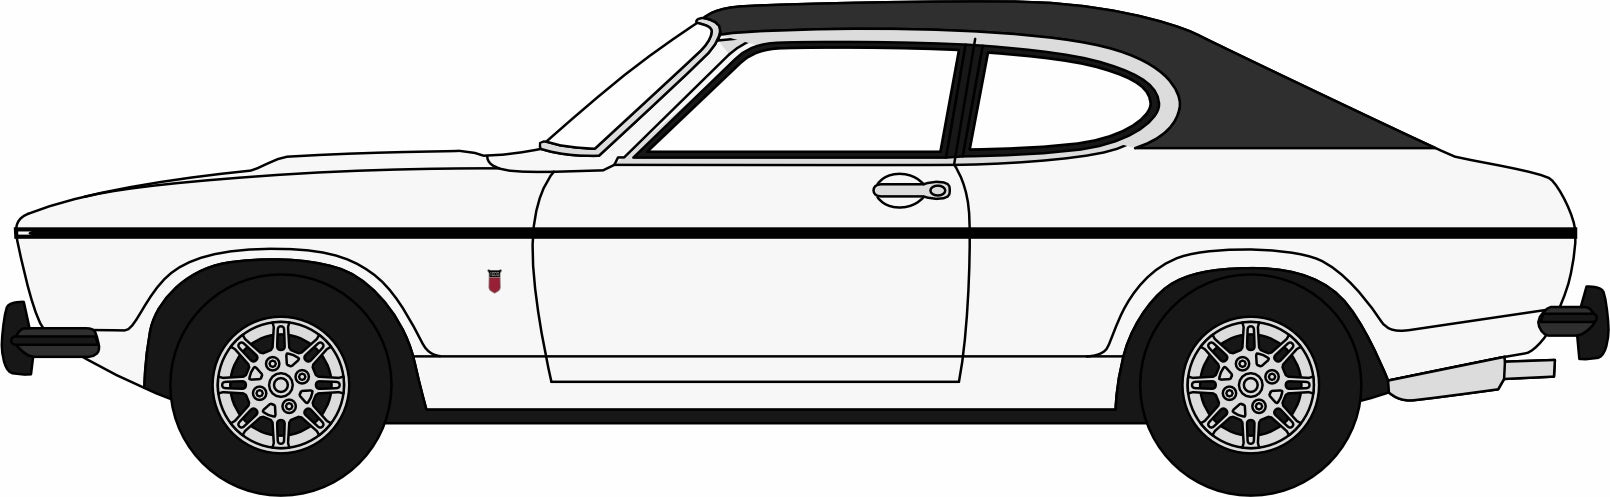 Oxford Diecast White Ford Capri Mk2 - 1:76 Scale 76CPR003 Left